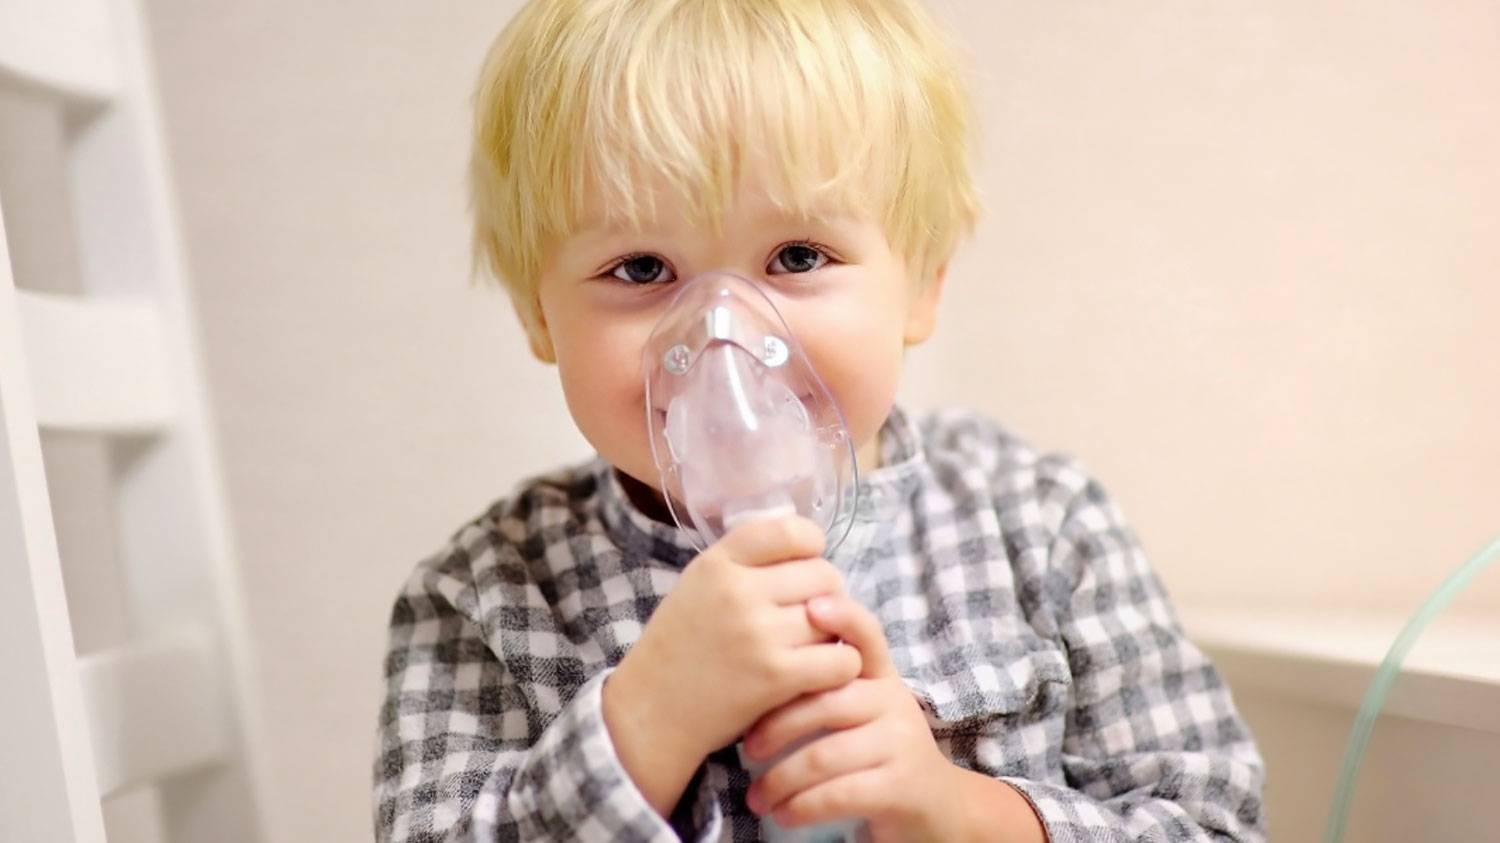 Частота дыхания у детей: норма по возрастам - таблица, у новорожденных - частота в минуту